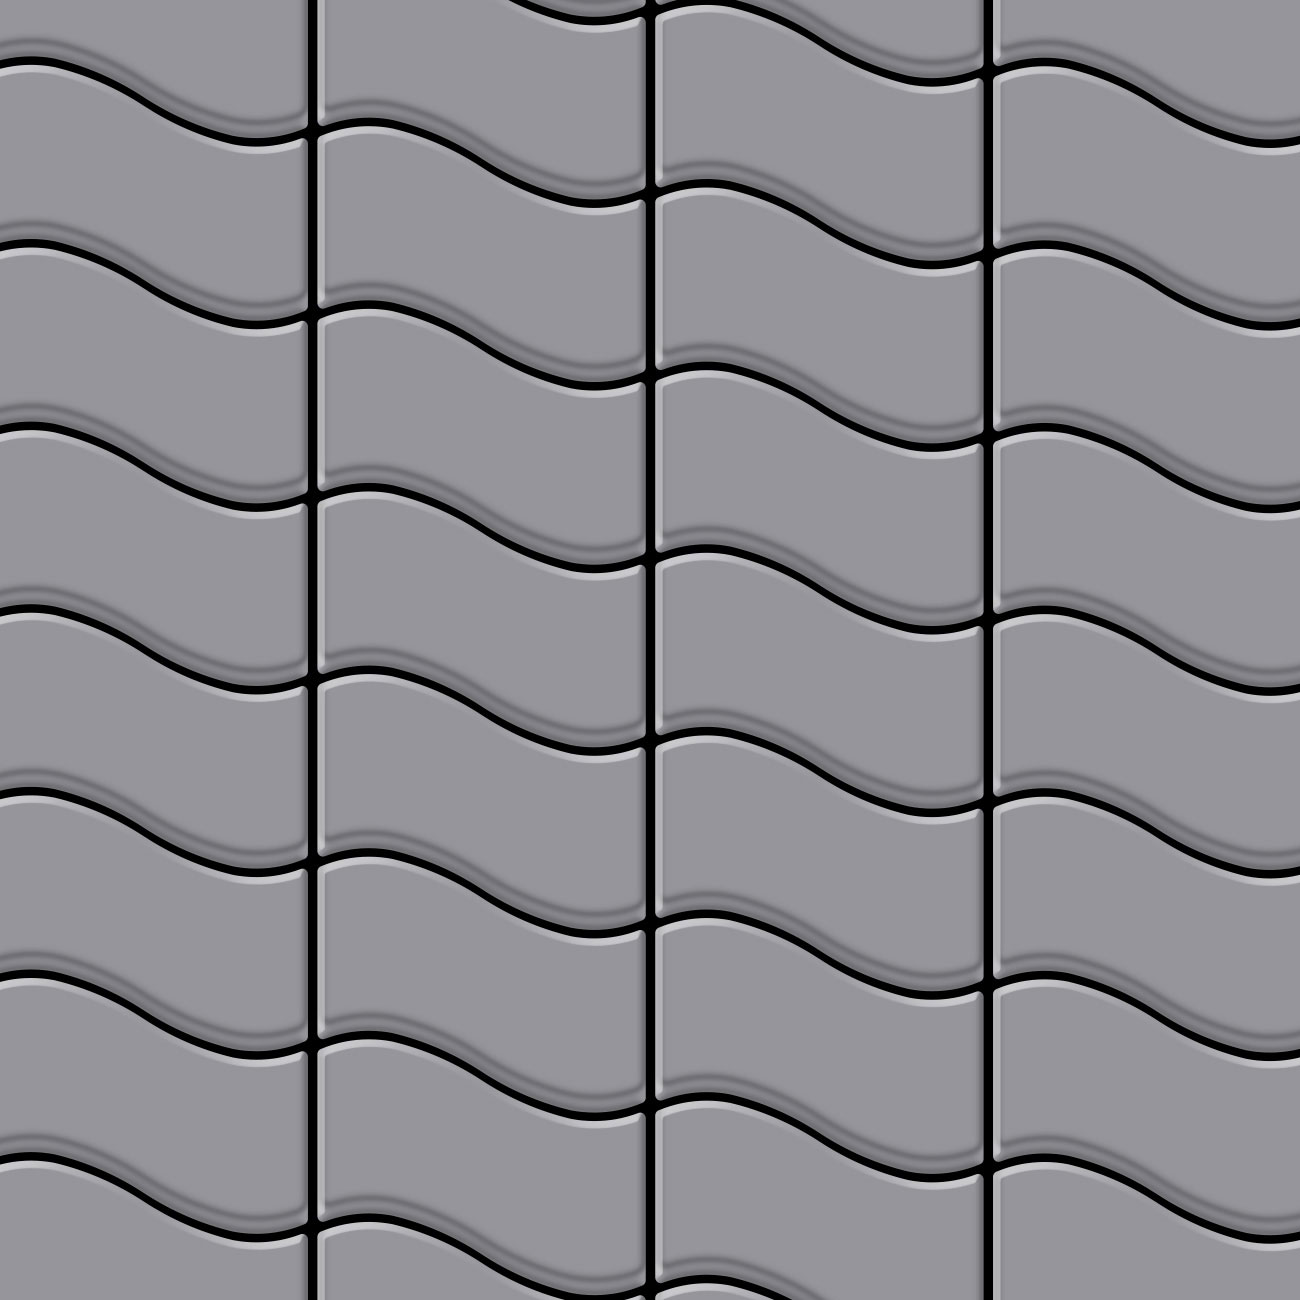 FLUX Stainless Steel Matte Tiles